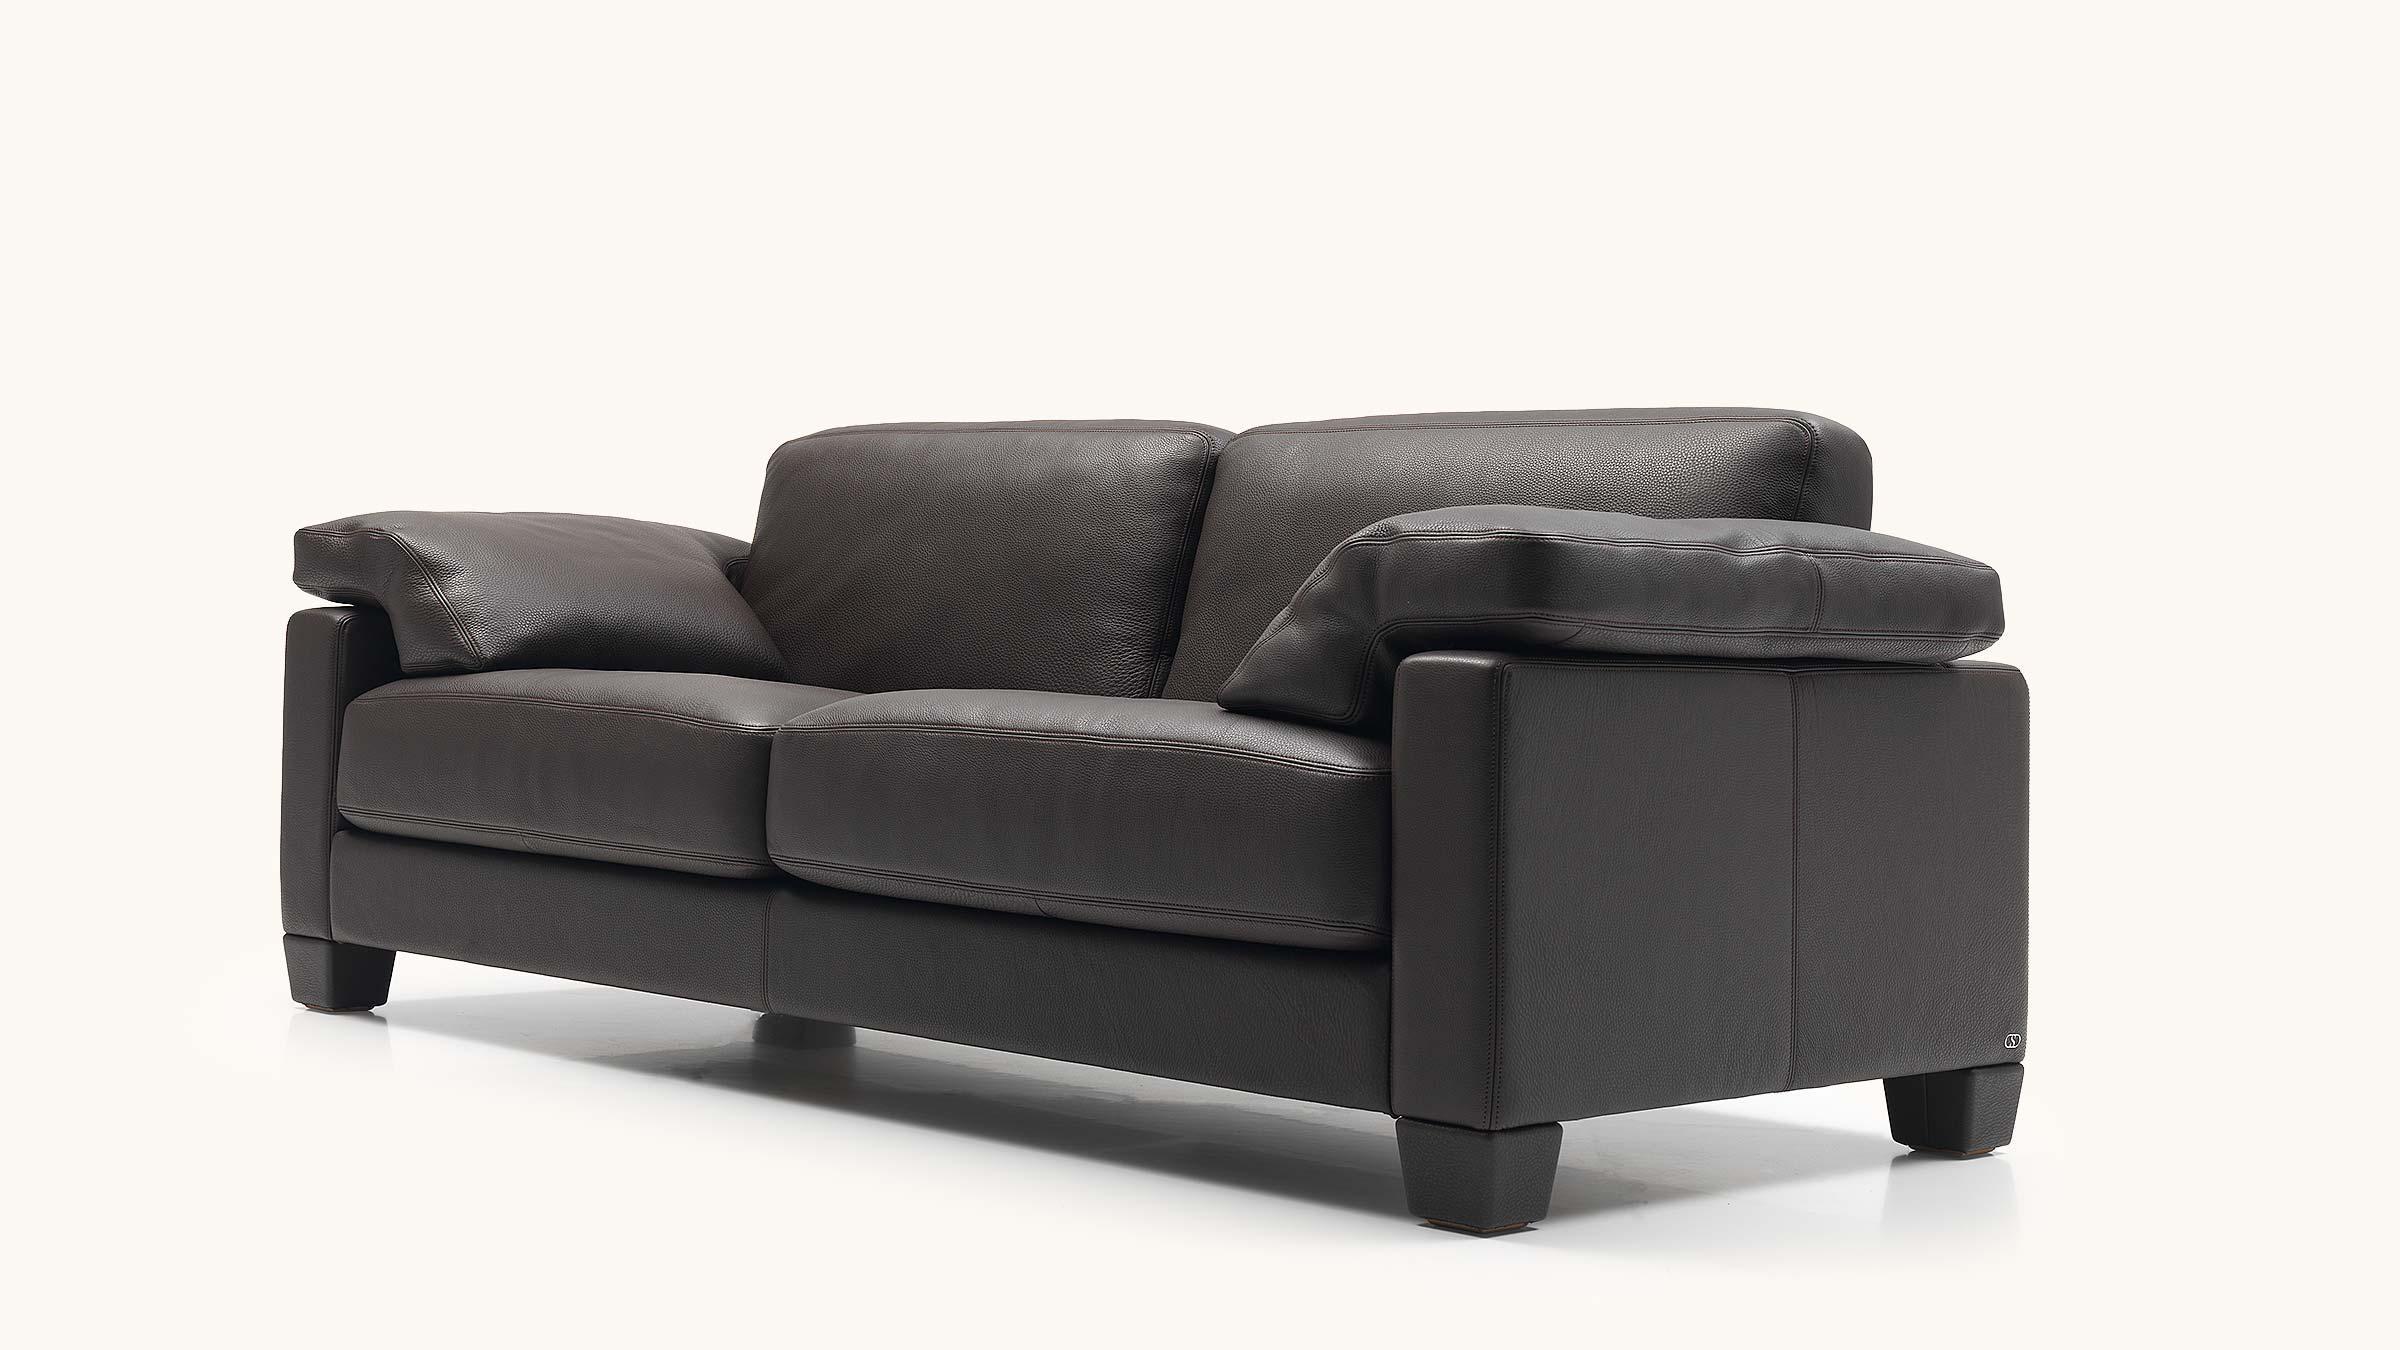 Die raffinierte Polsterung unterstreicht die nonchalant charmanten Formen, hier ist Sofa-Programm! Dieses Sofa ist ein wahrer Meister des Sitzkomforts. Sinken Sie bequem und erholsam in den weichen DS-17 und folgen Sie Ihren Träumen, gemäß der De